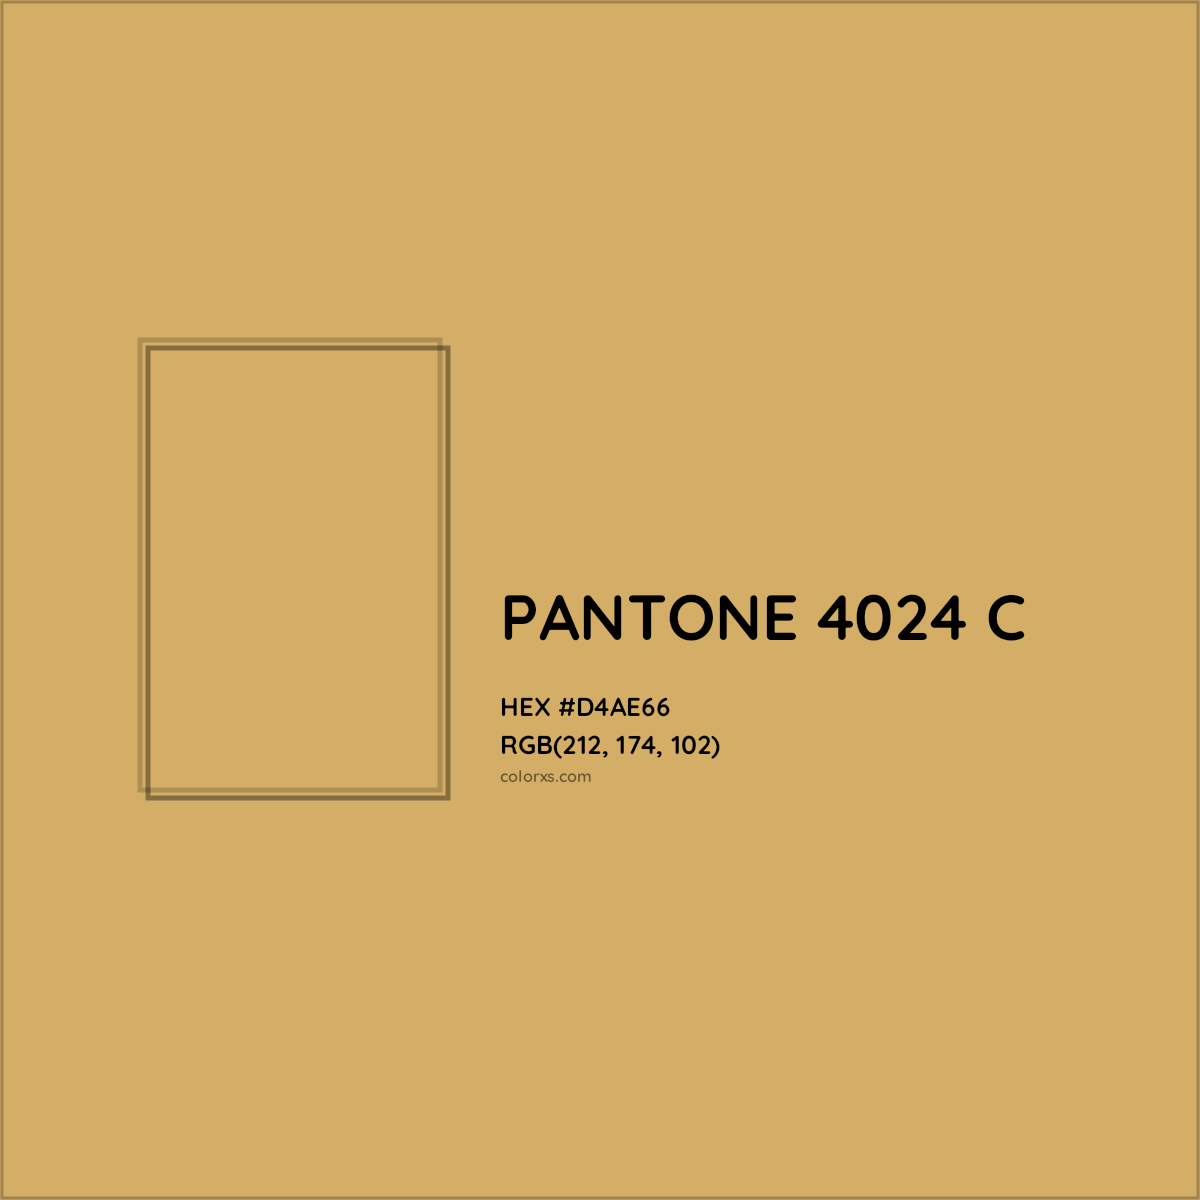 HEX #D4AE66 PANTONE 4024 C CMS Pantone PMS - Color Code